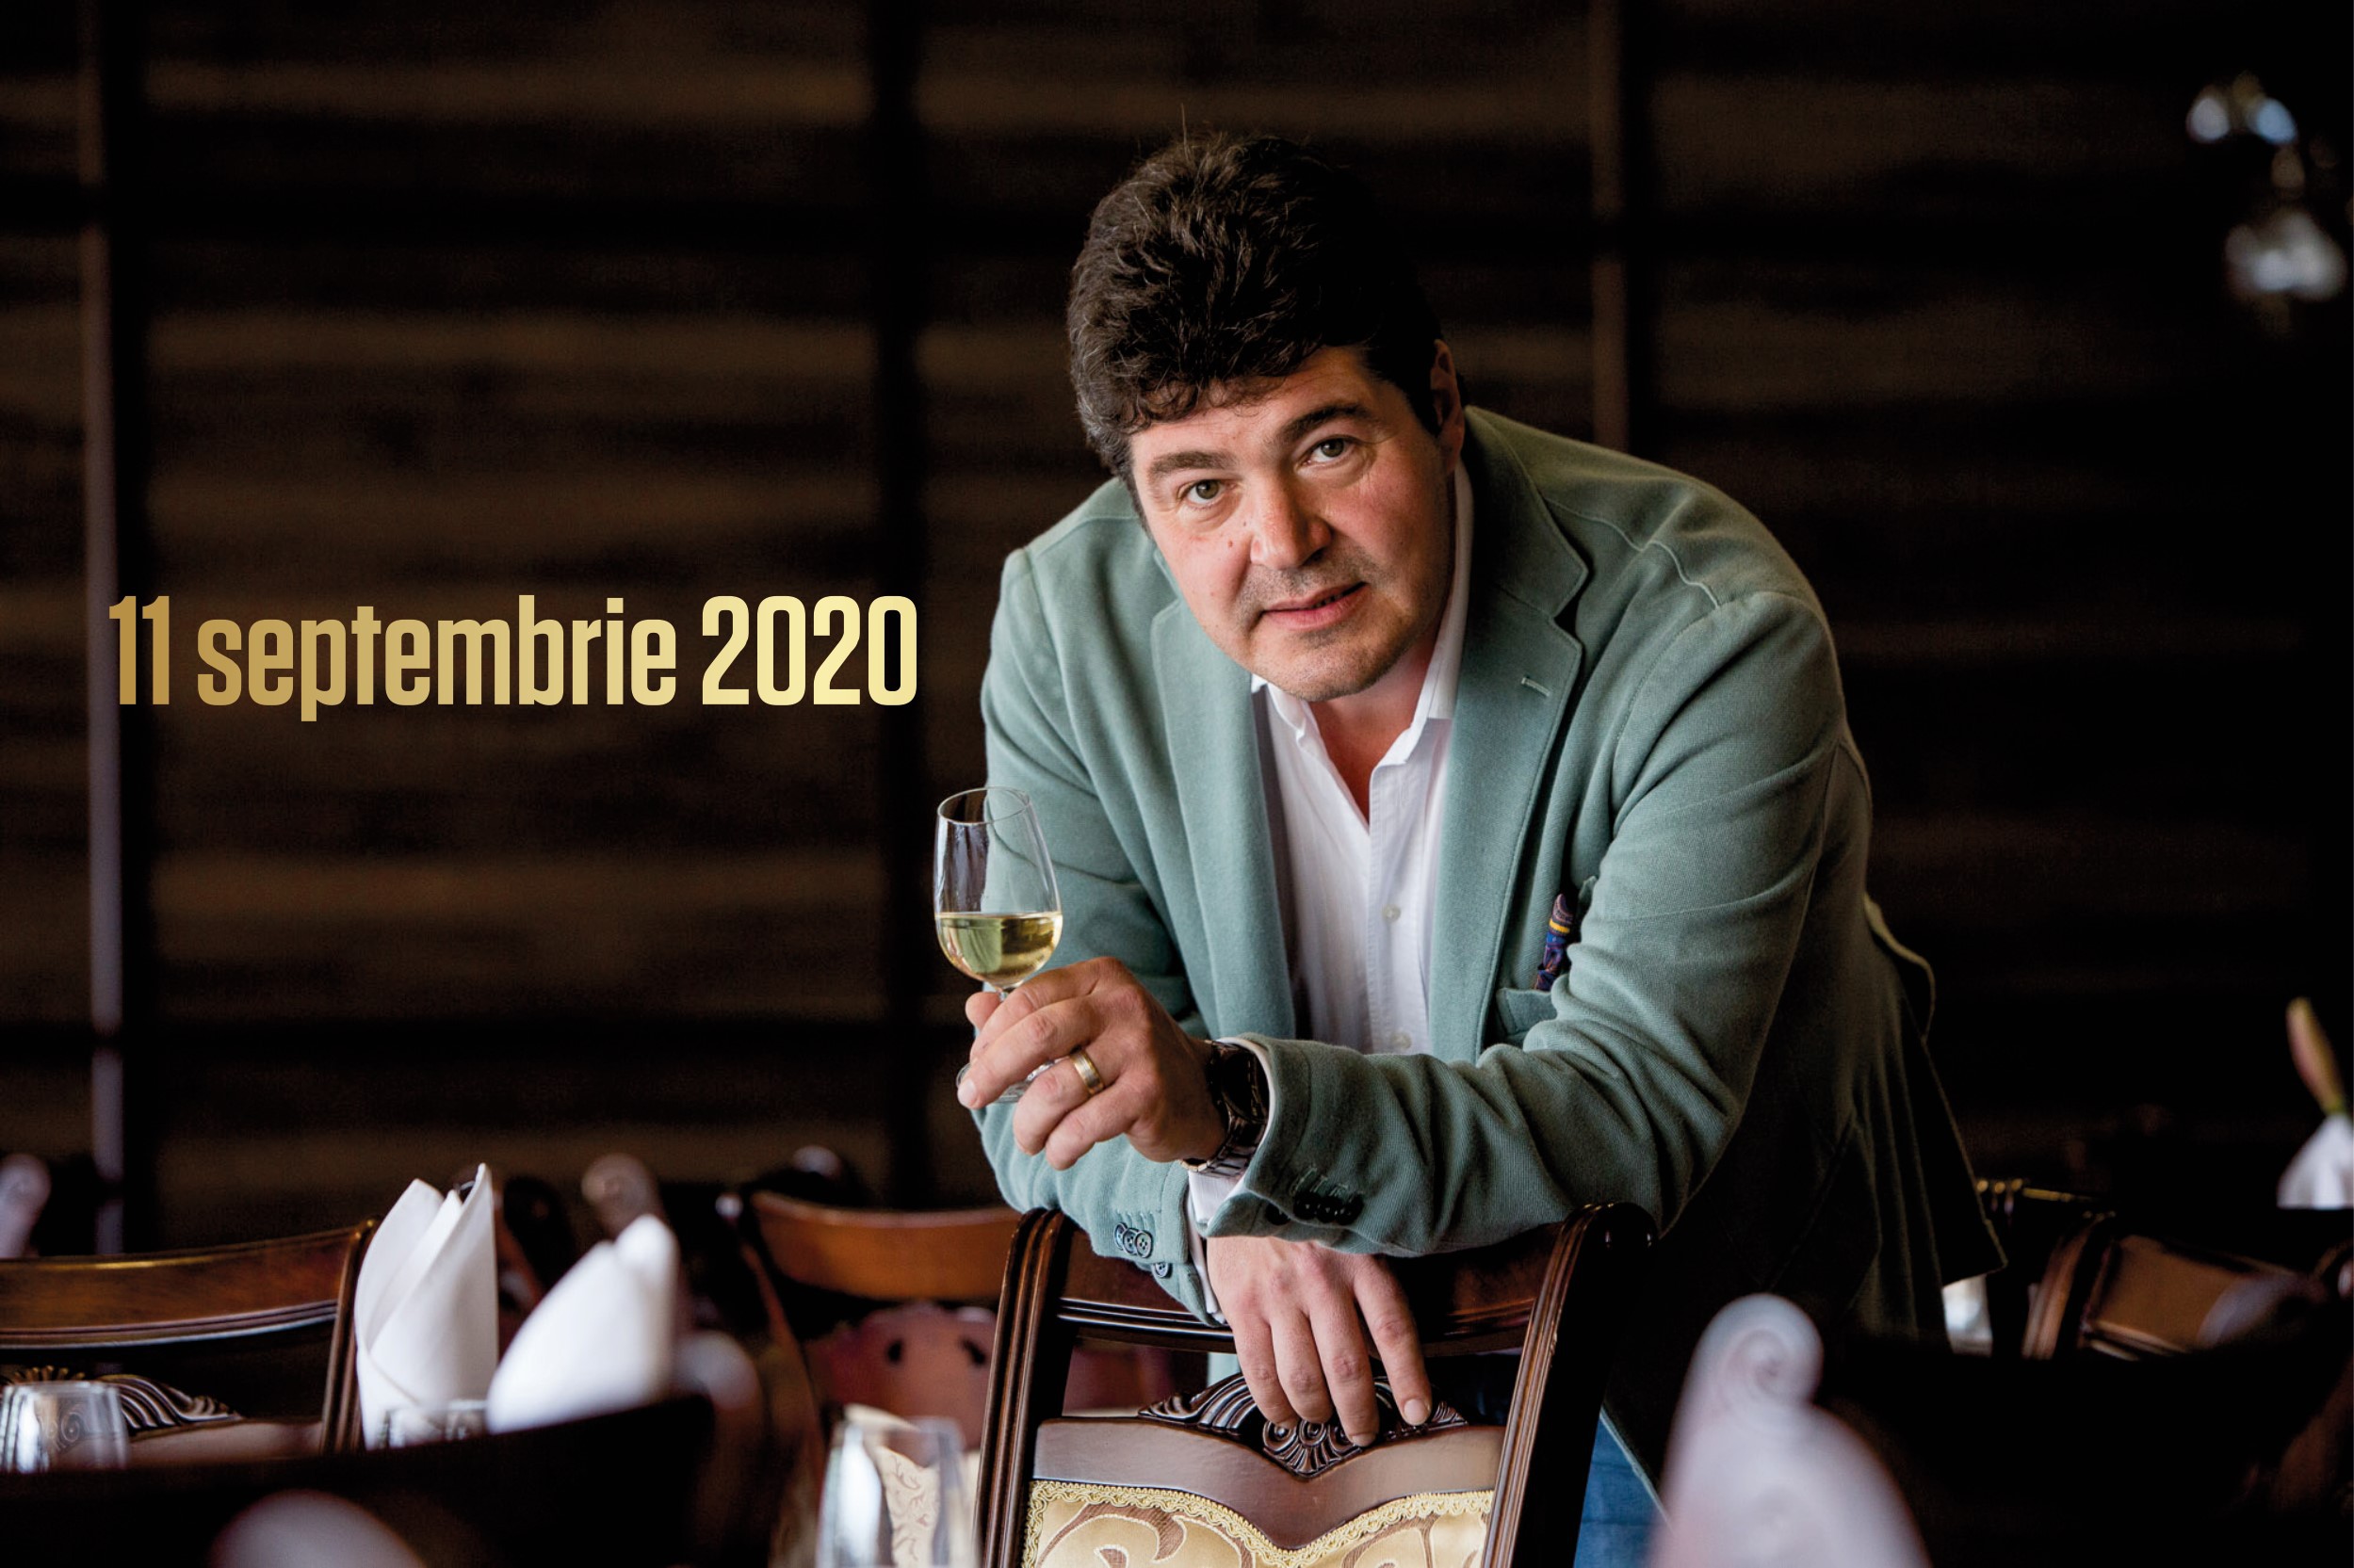 11 - 13 septembrie 2020 – Ce vinuri bem în acest weekend, 3 vinuri pentru 3 seri. Recomandările lui Cătălin Păduraru, Preşedintele VINARIUM International Wine Contest